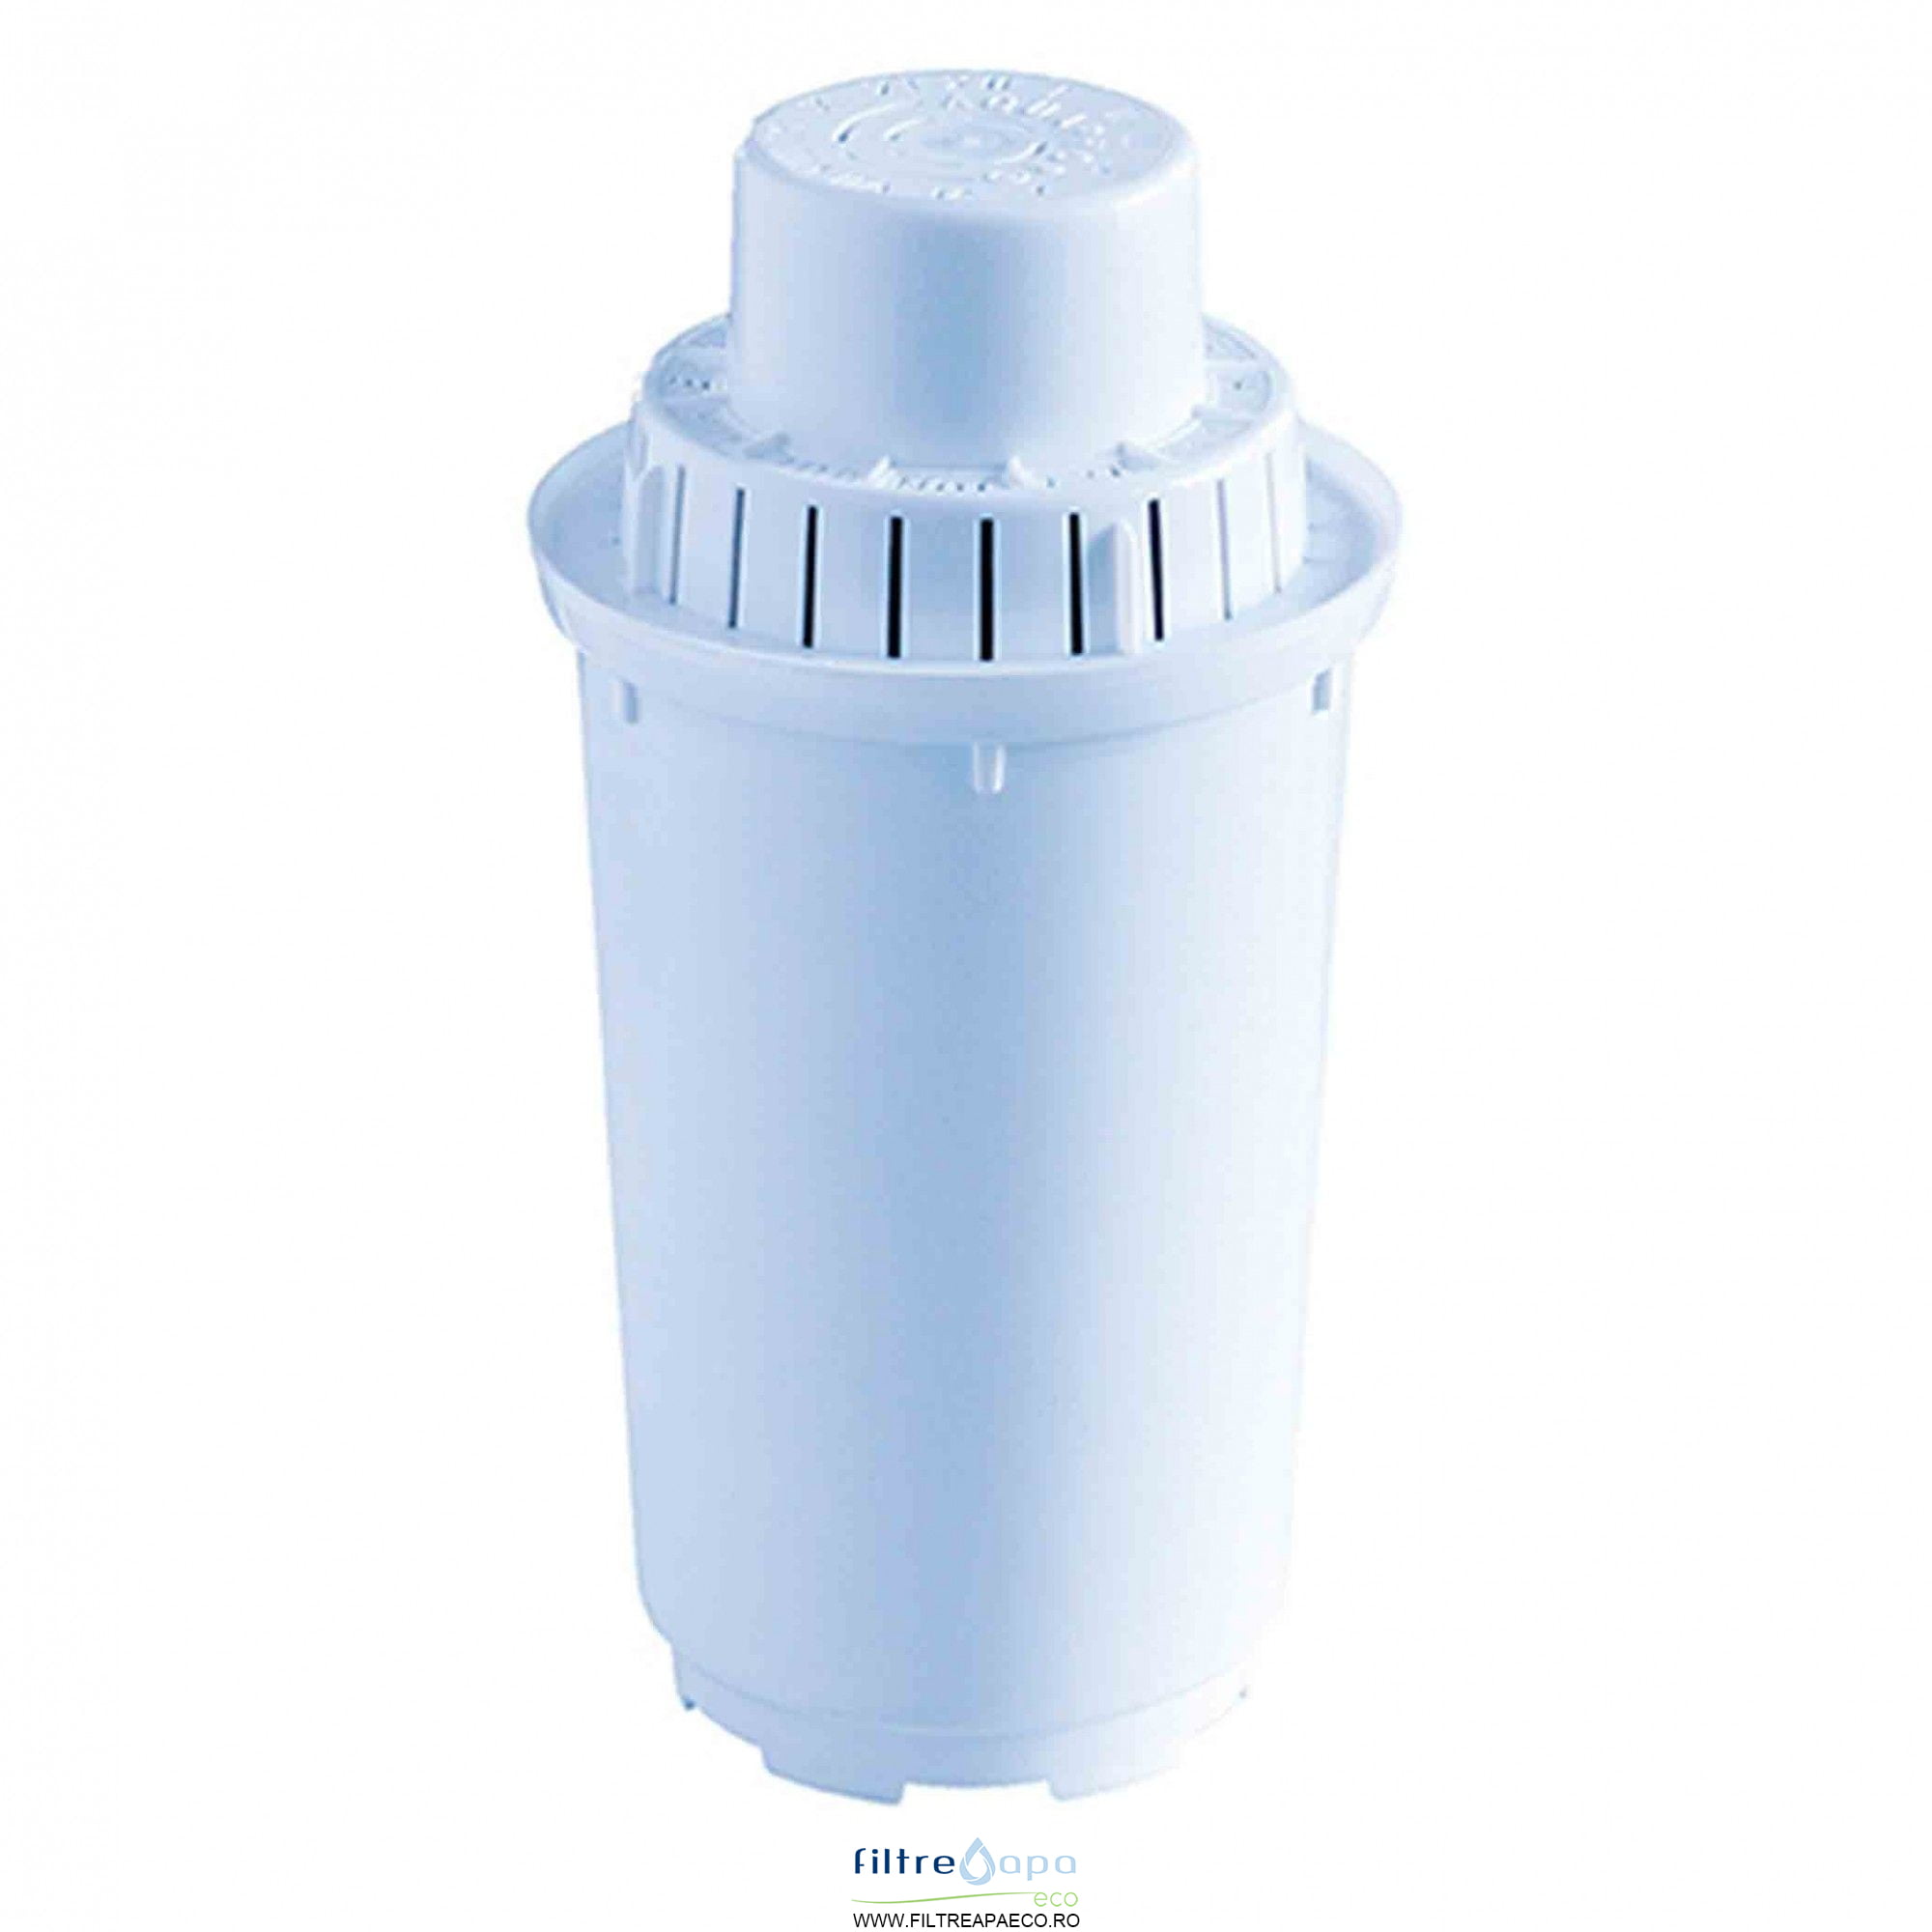 Unsafe Razor Advance Element filtrant B100-5 pentru Filtrul Cana Aquaphor la SET 2 bucati » Filtre  Apa Eco România